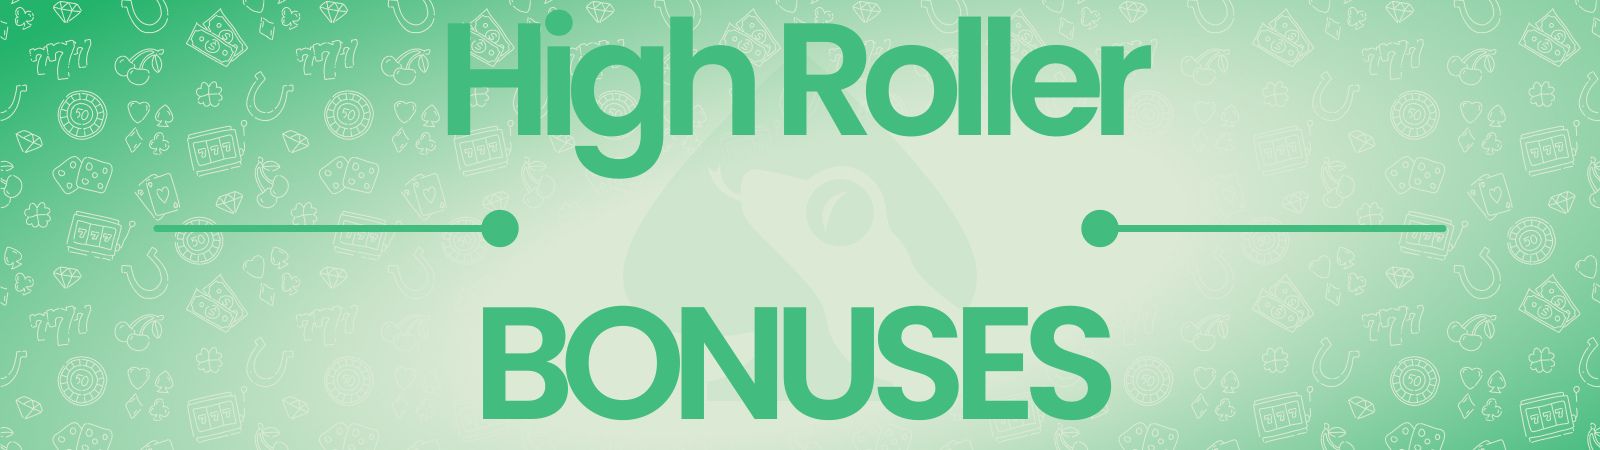 best high roller bonus uk